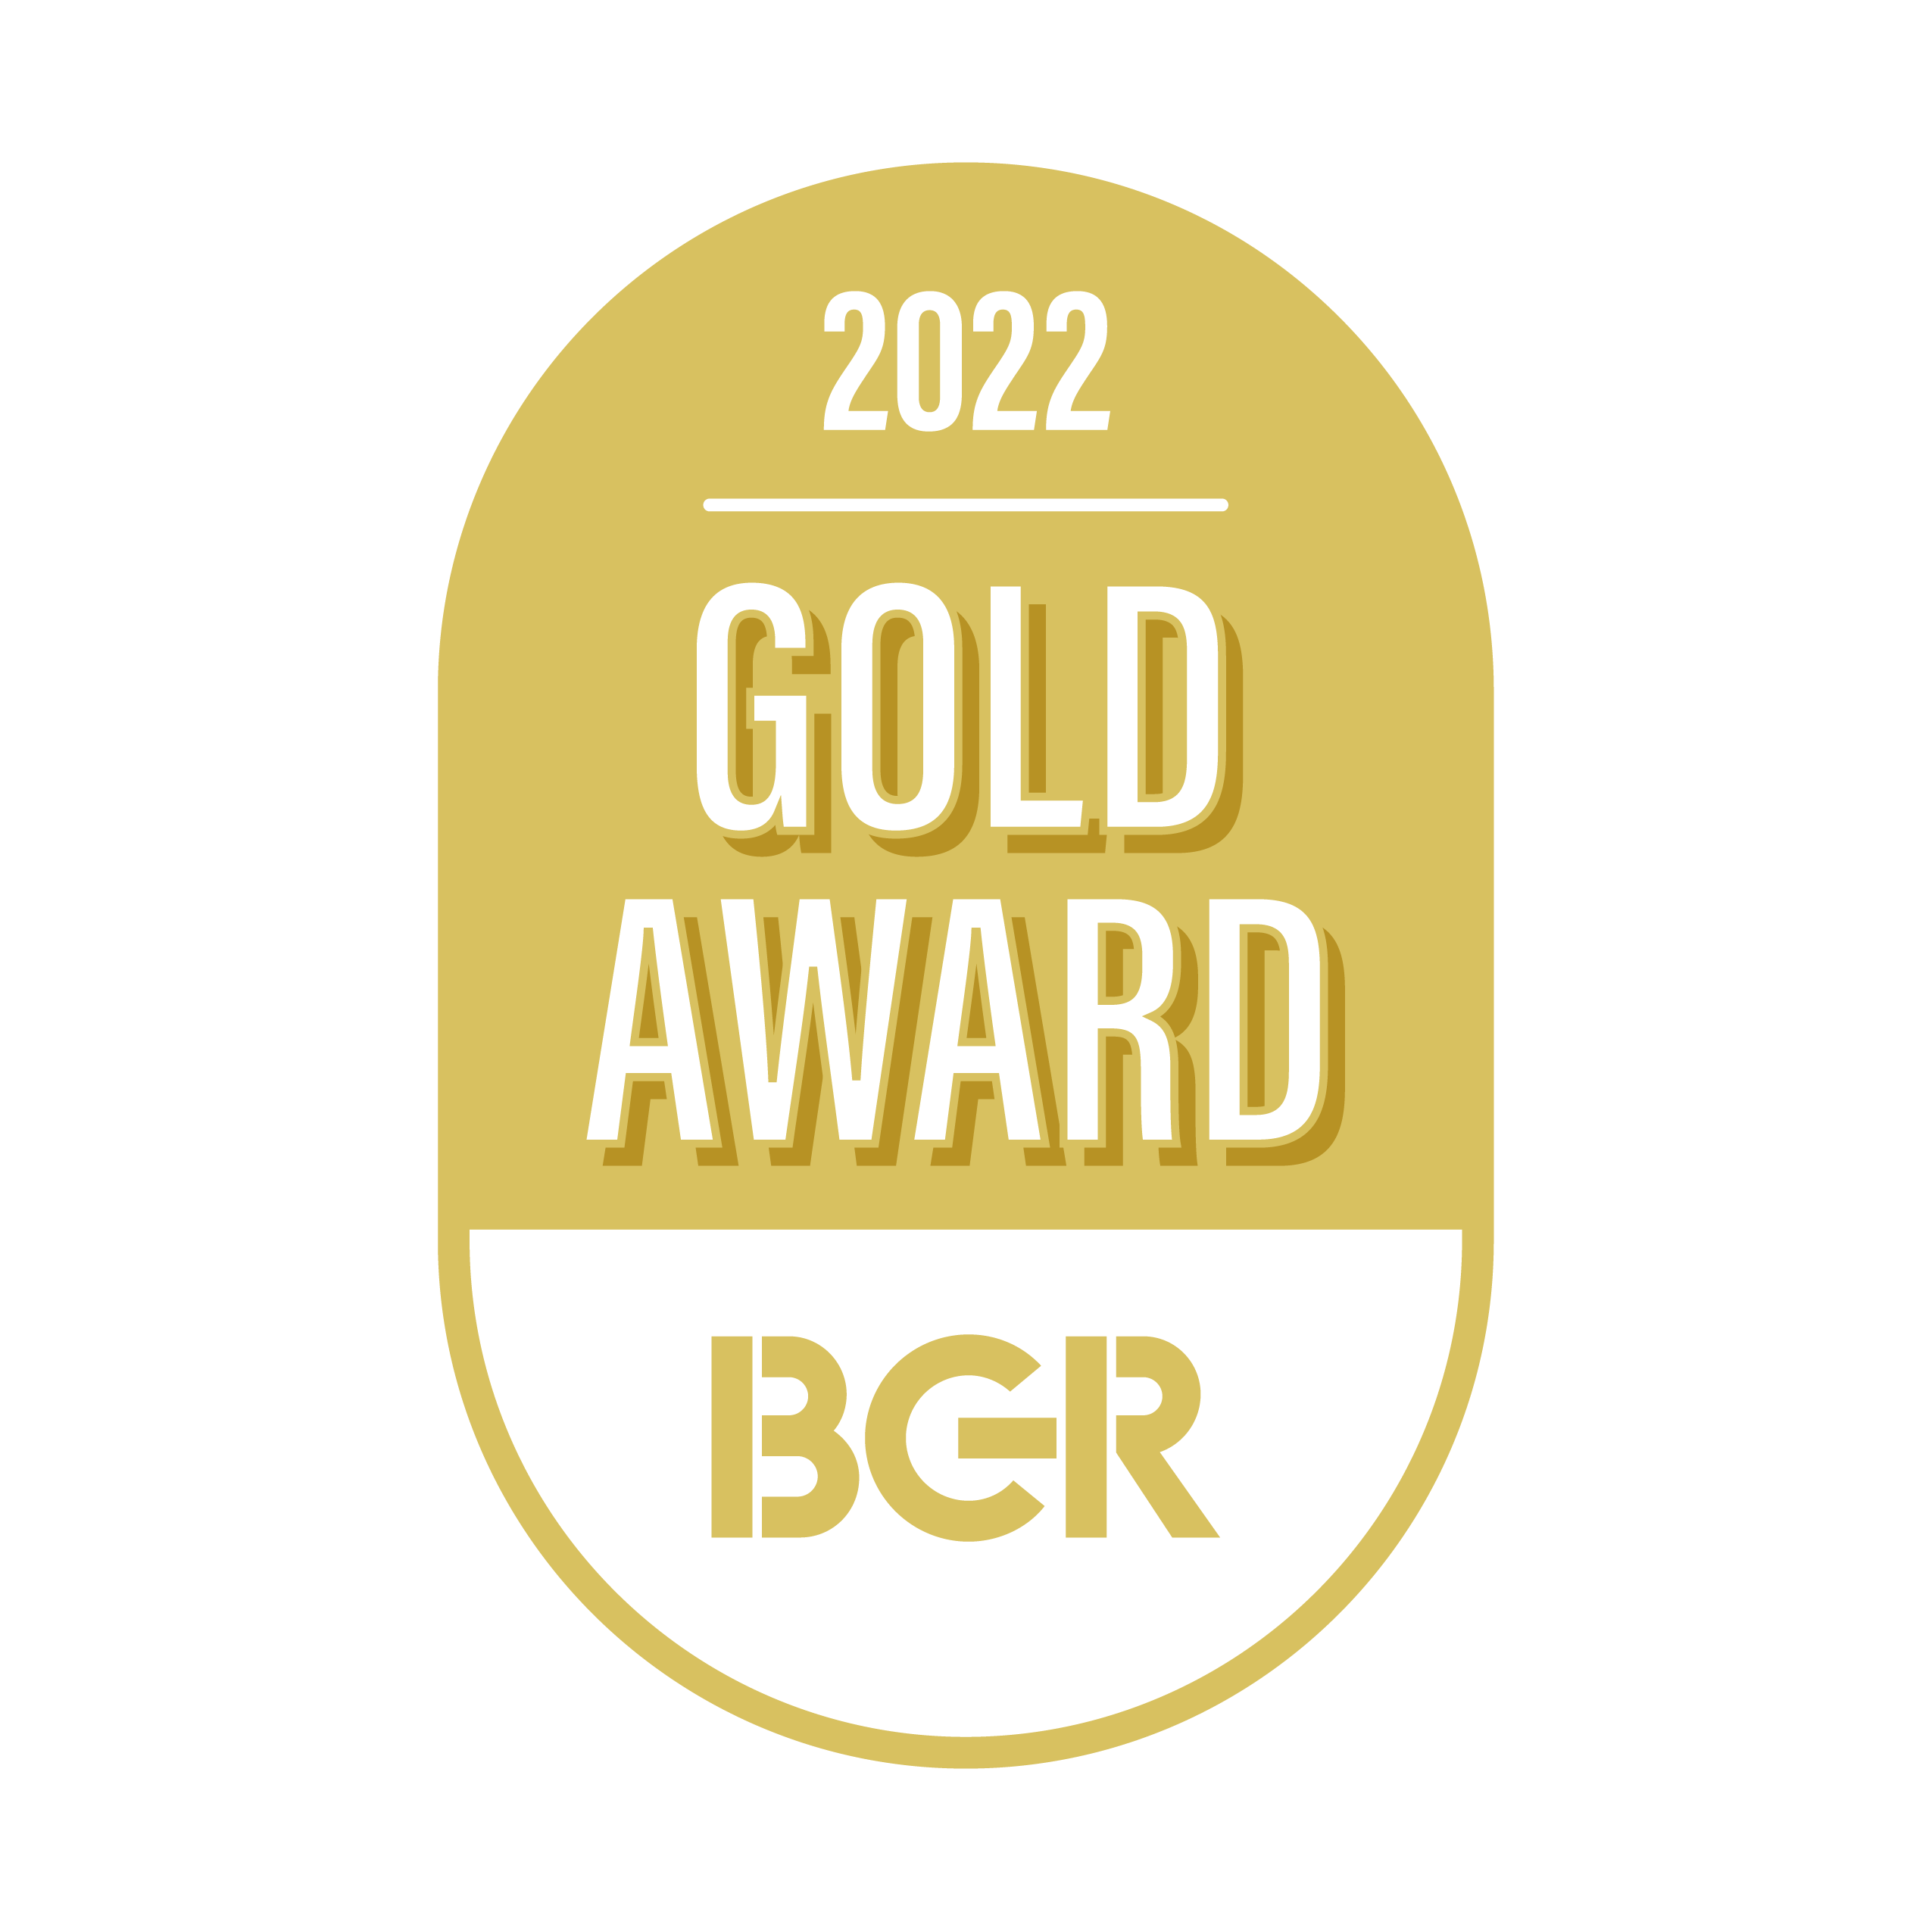 BGR Gold Award 2022